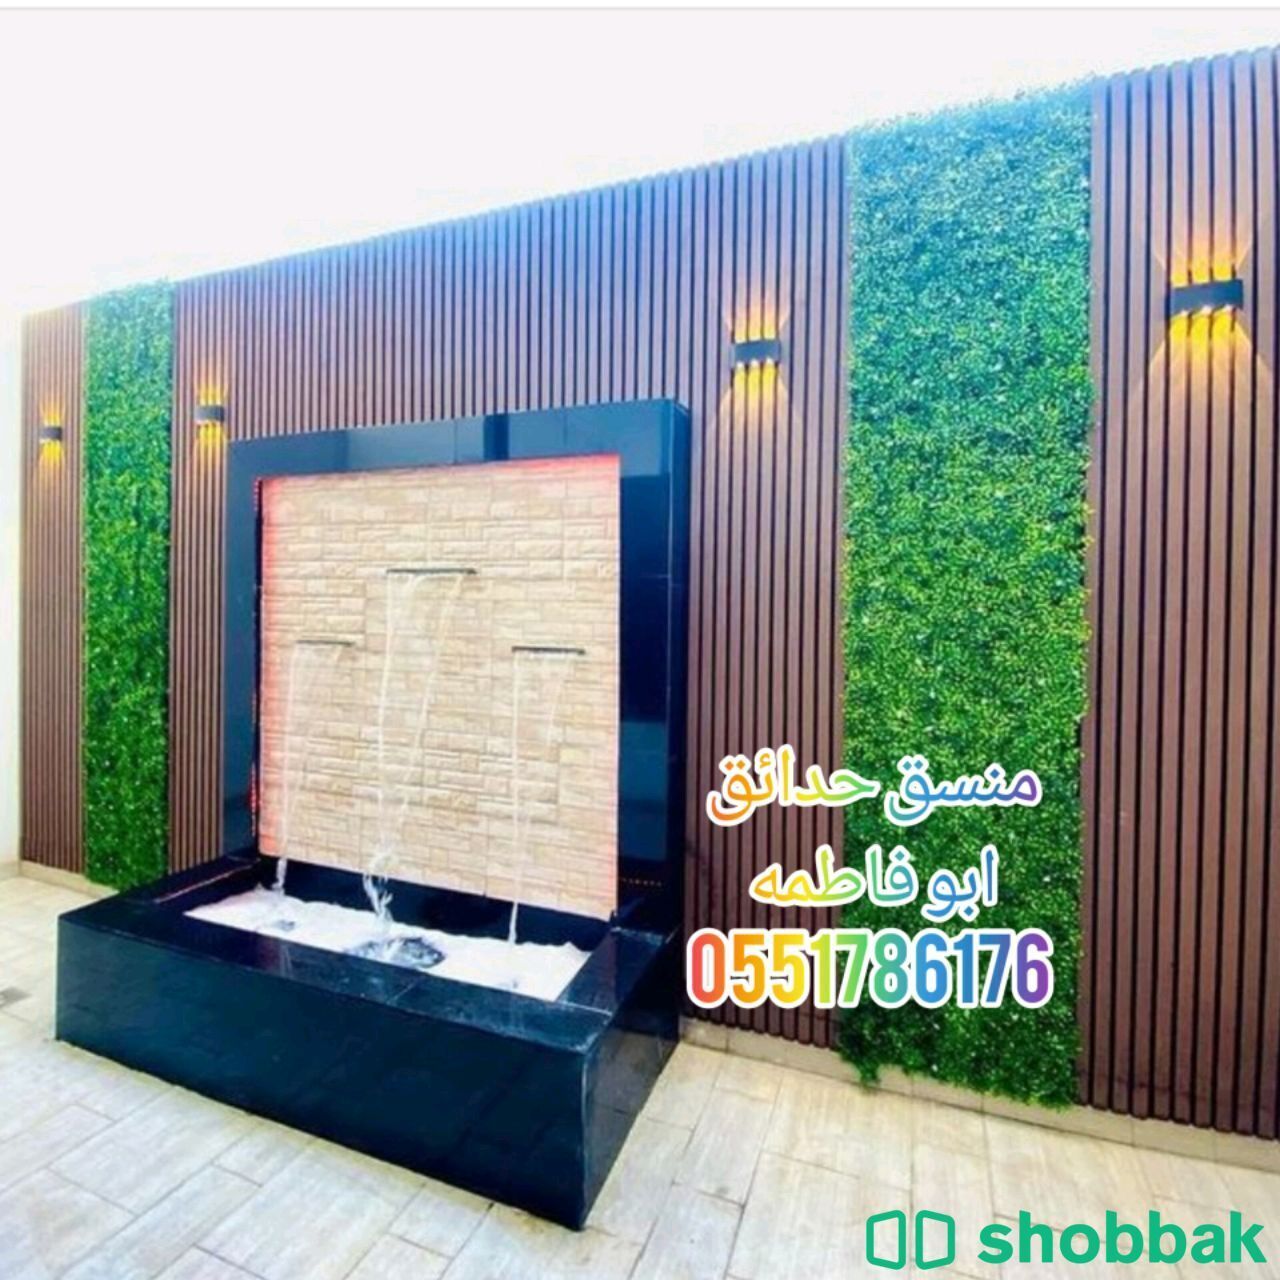 تنسيق حدائق القصيم  Shobbak Saudi Arabia